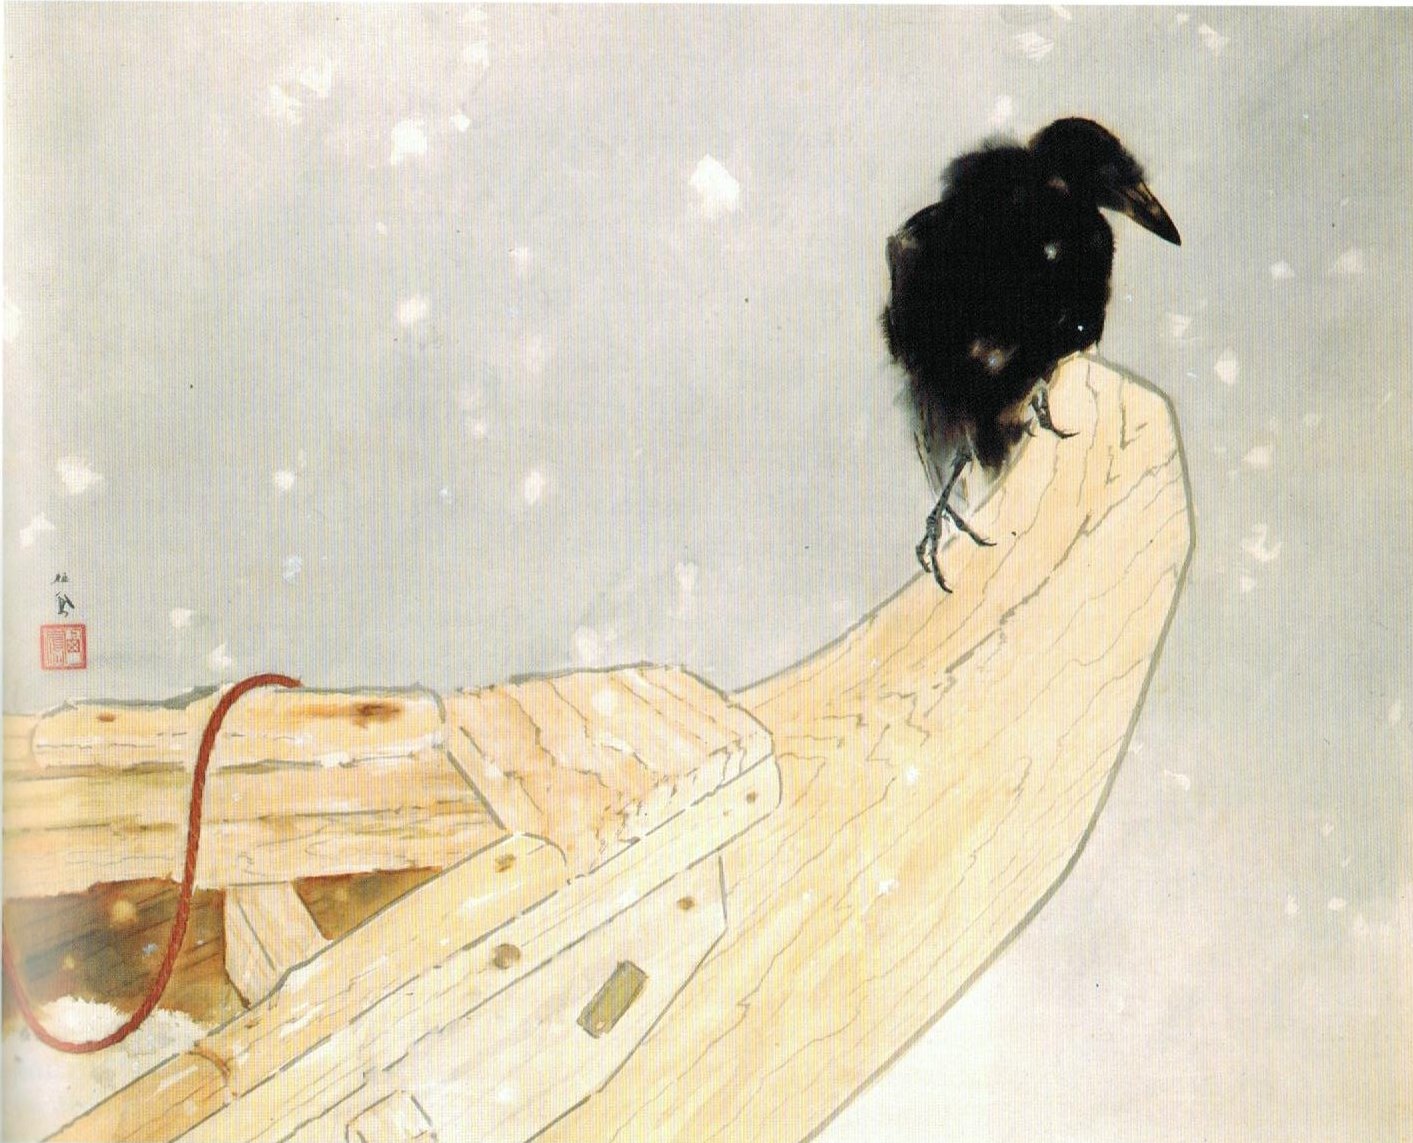 Wiosenny Śnieg (Shunsetsu) by Takeuchi Seihō - 1942 - 74.3 x 90.9 cm 